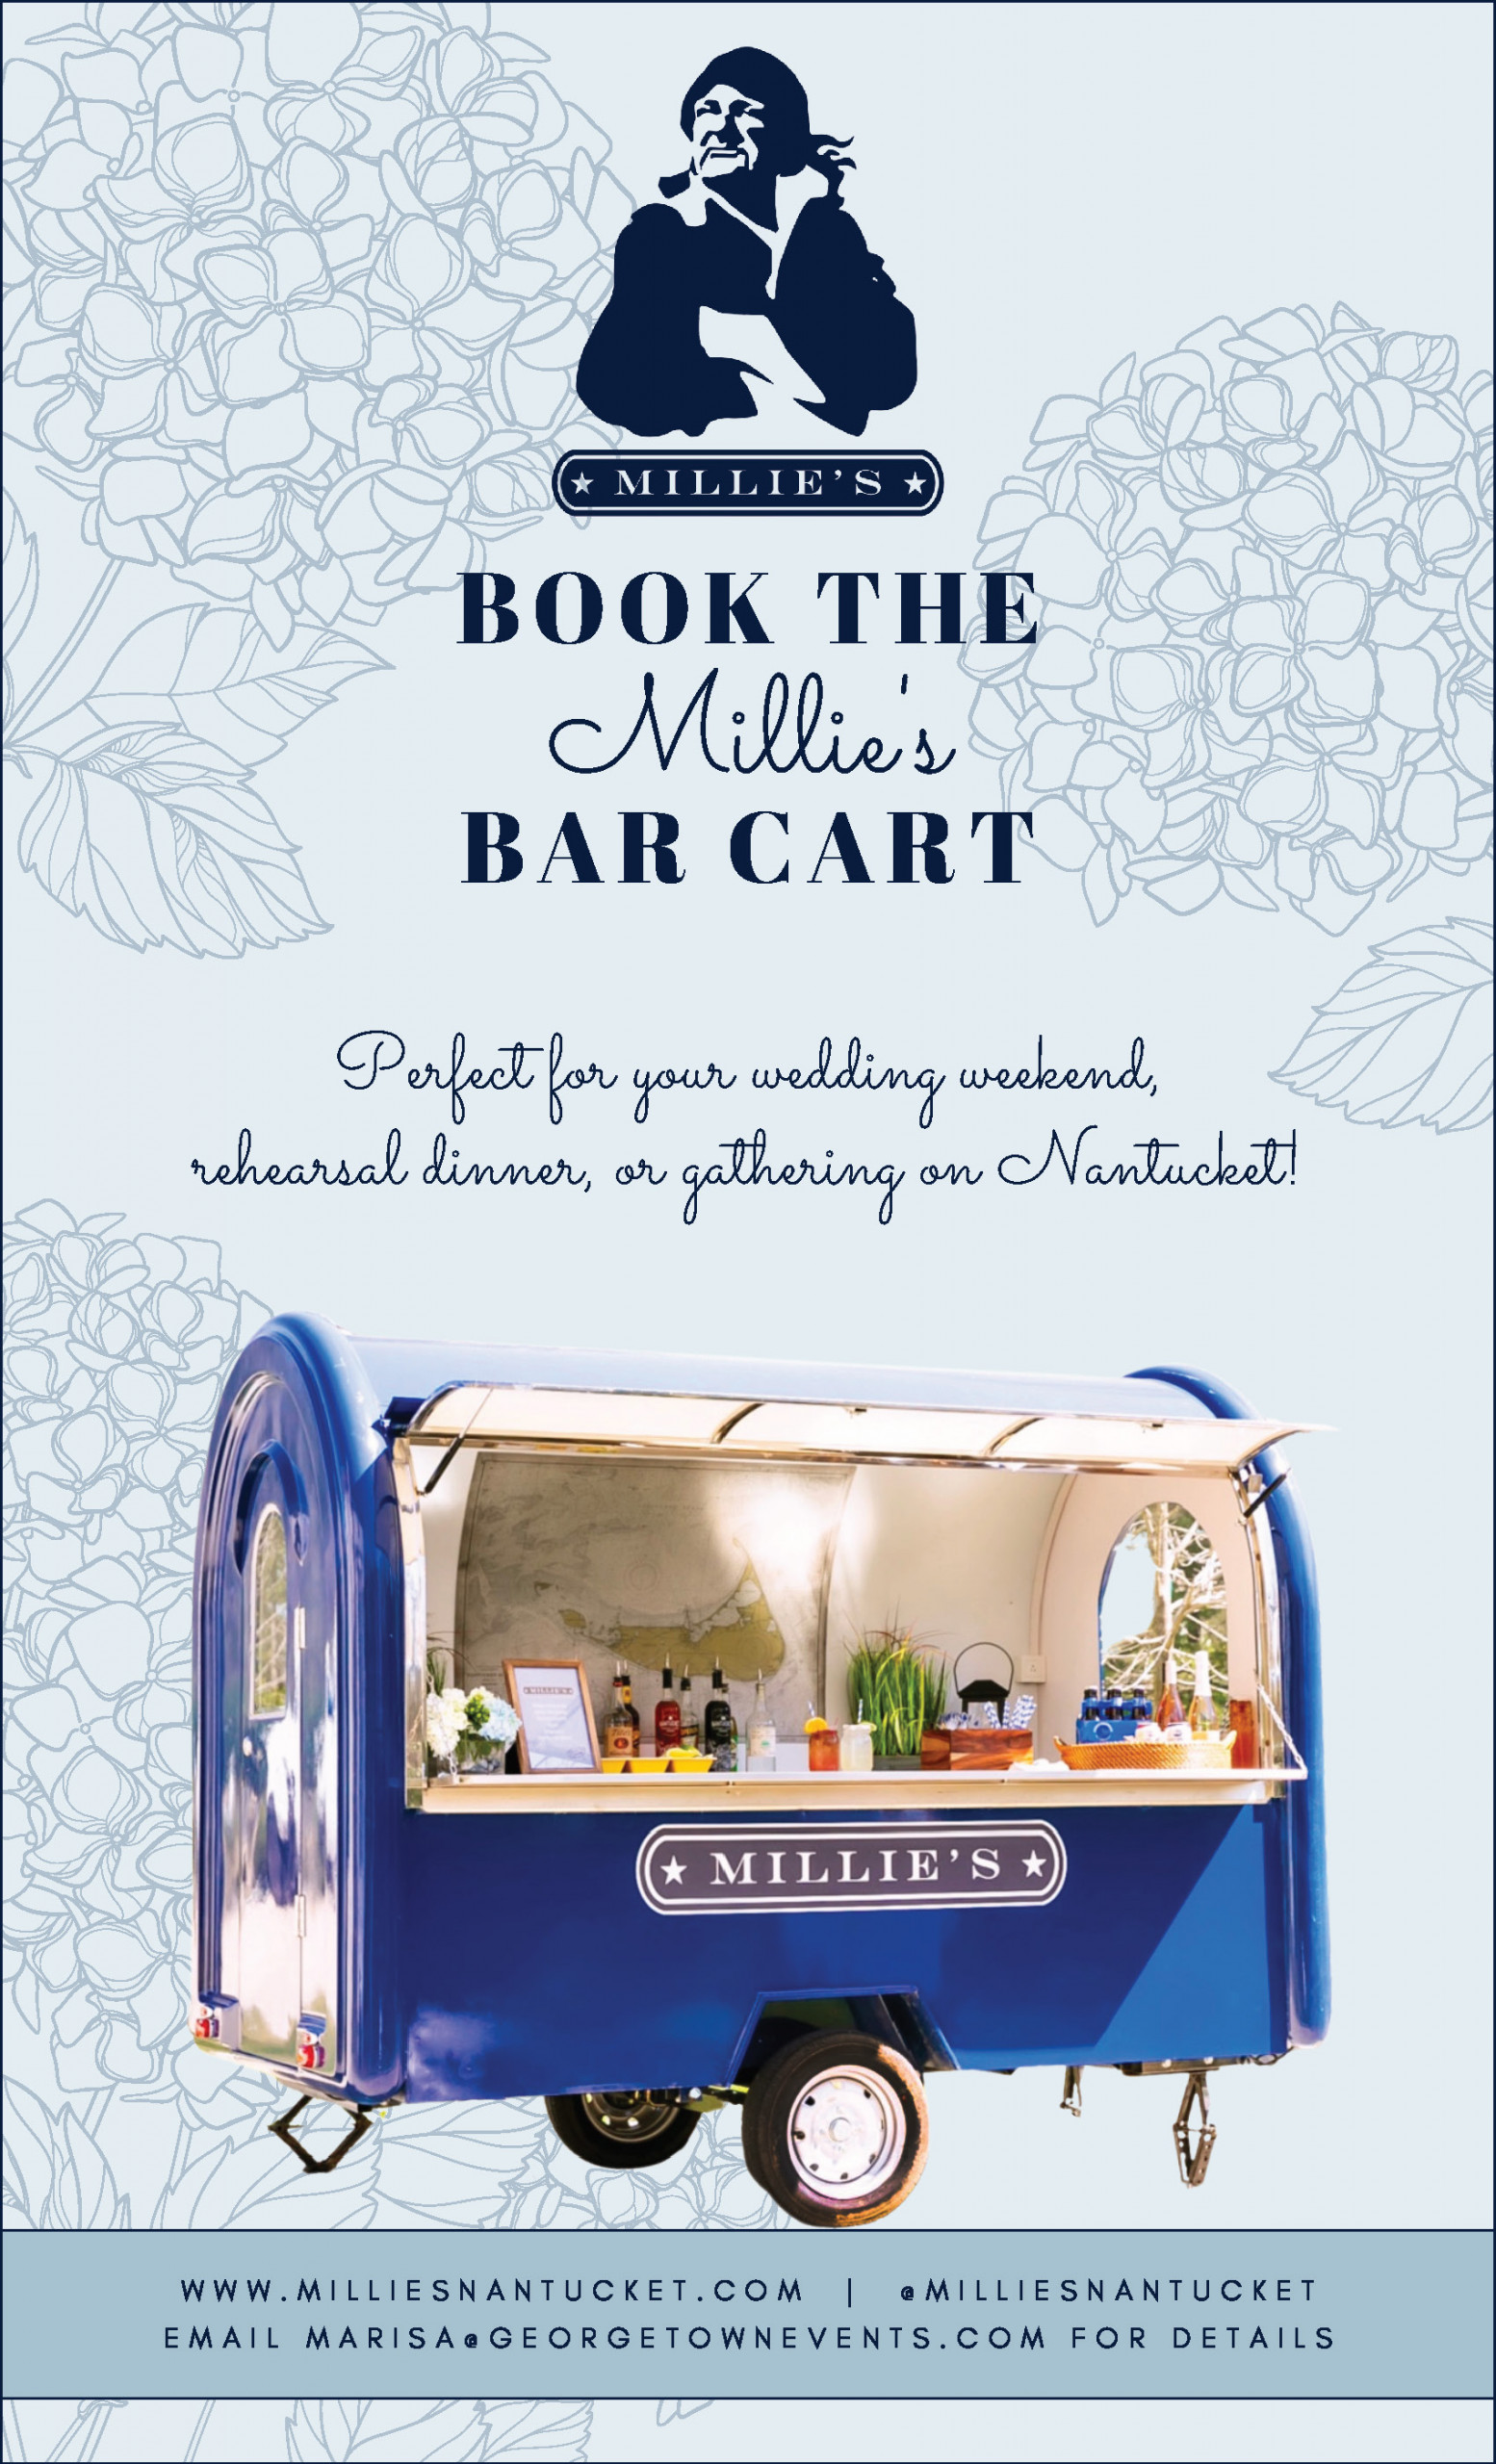 Millie's Nantucket Bar Cart